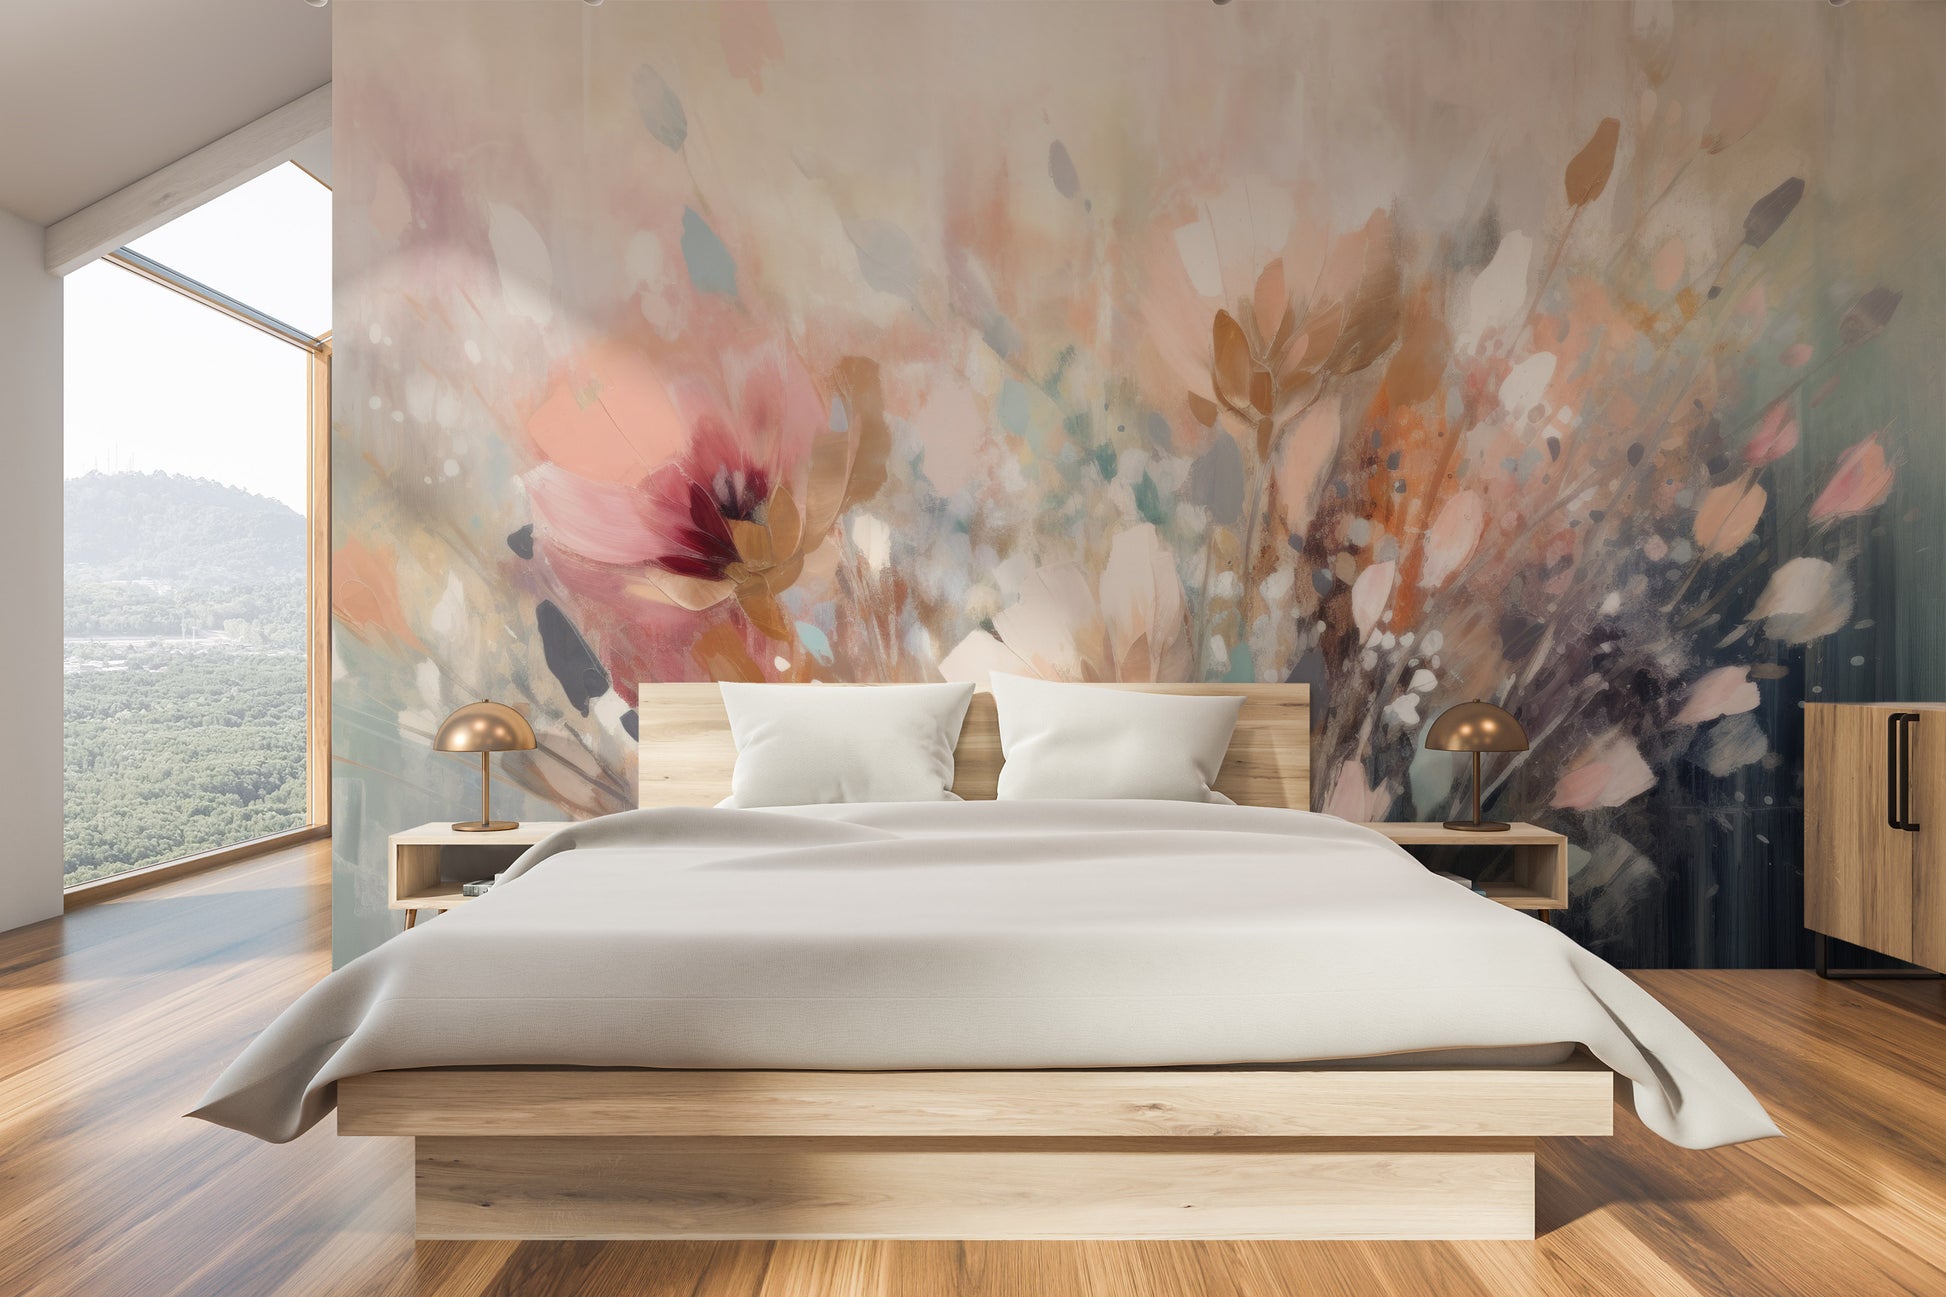 Fototapeta malowana o nazwie Dreamy Floral Impression pokazana w aranżacji wnętrza.